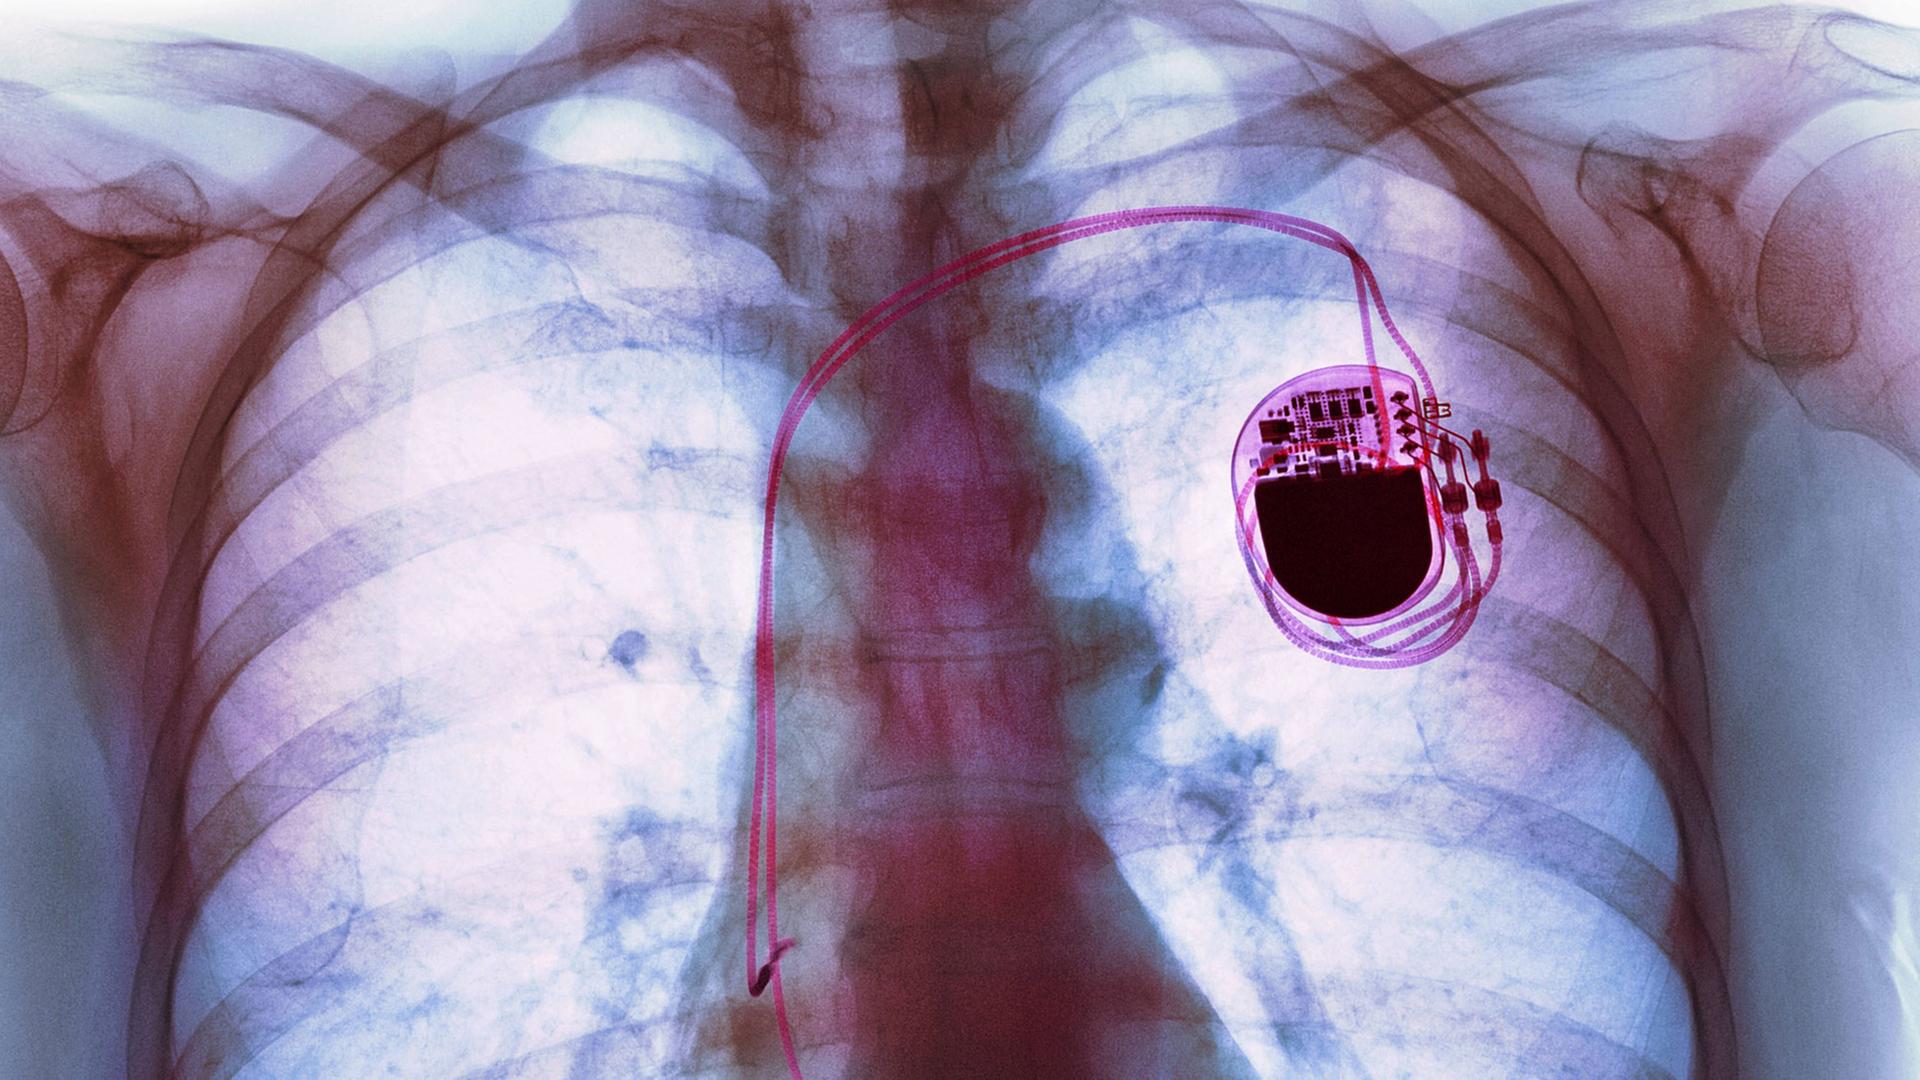 Röntgenaufnahme eines Patienten mit einem Herzschrittmacher